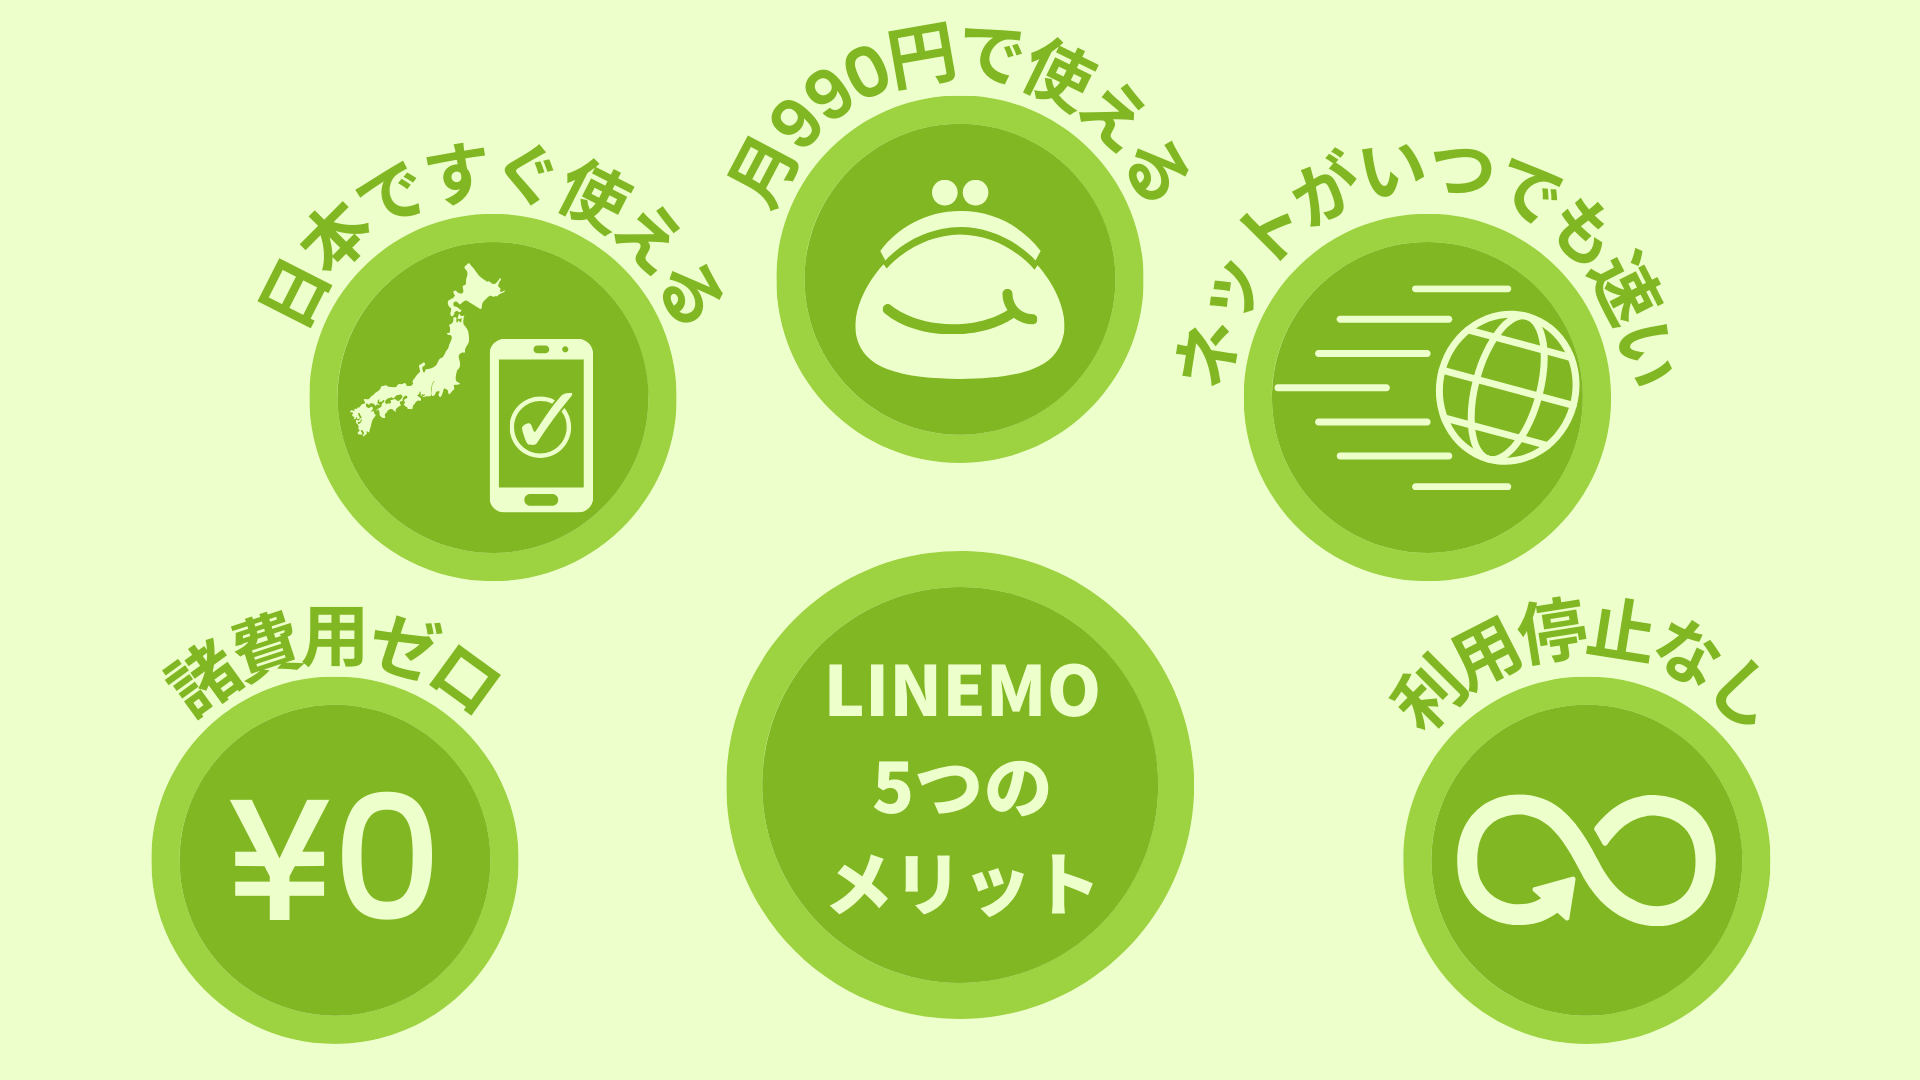 LINEMOを一時帰国に使う5つのメリット:1.諸費用ゼロ　2.日本ですぐ使える　3.月990円で使える 4.ネットがいつでも速い 5.利用停止なし